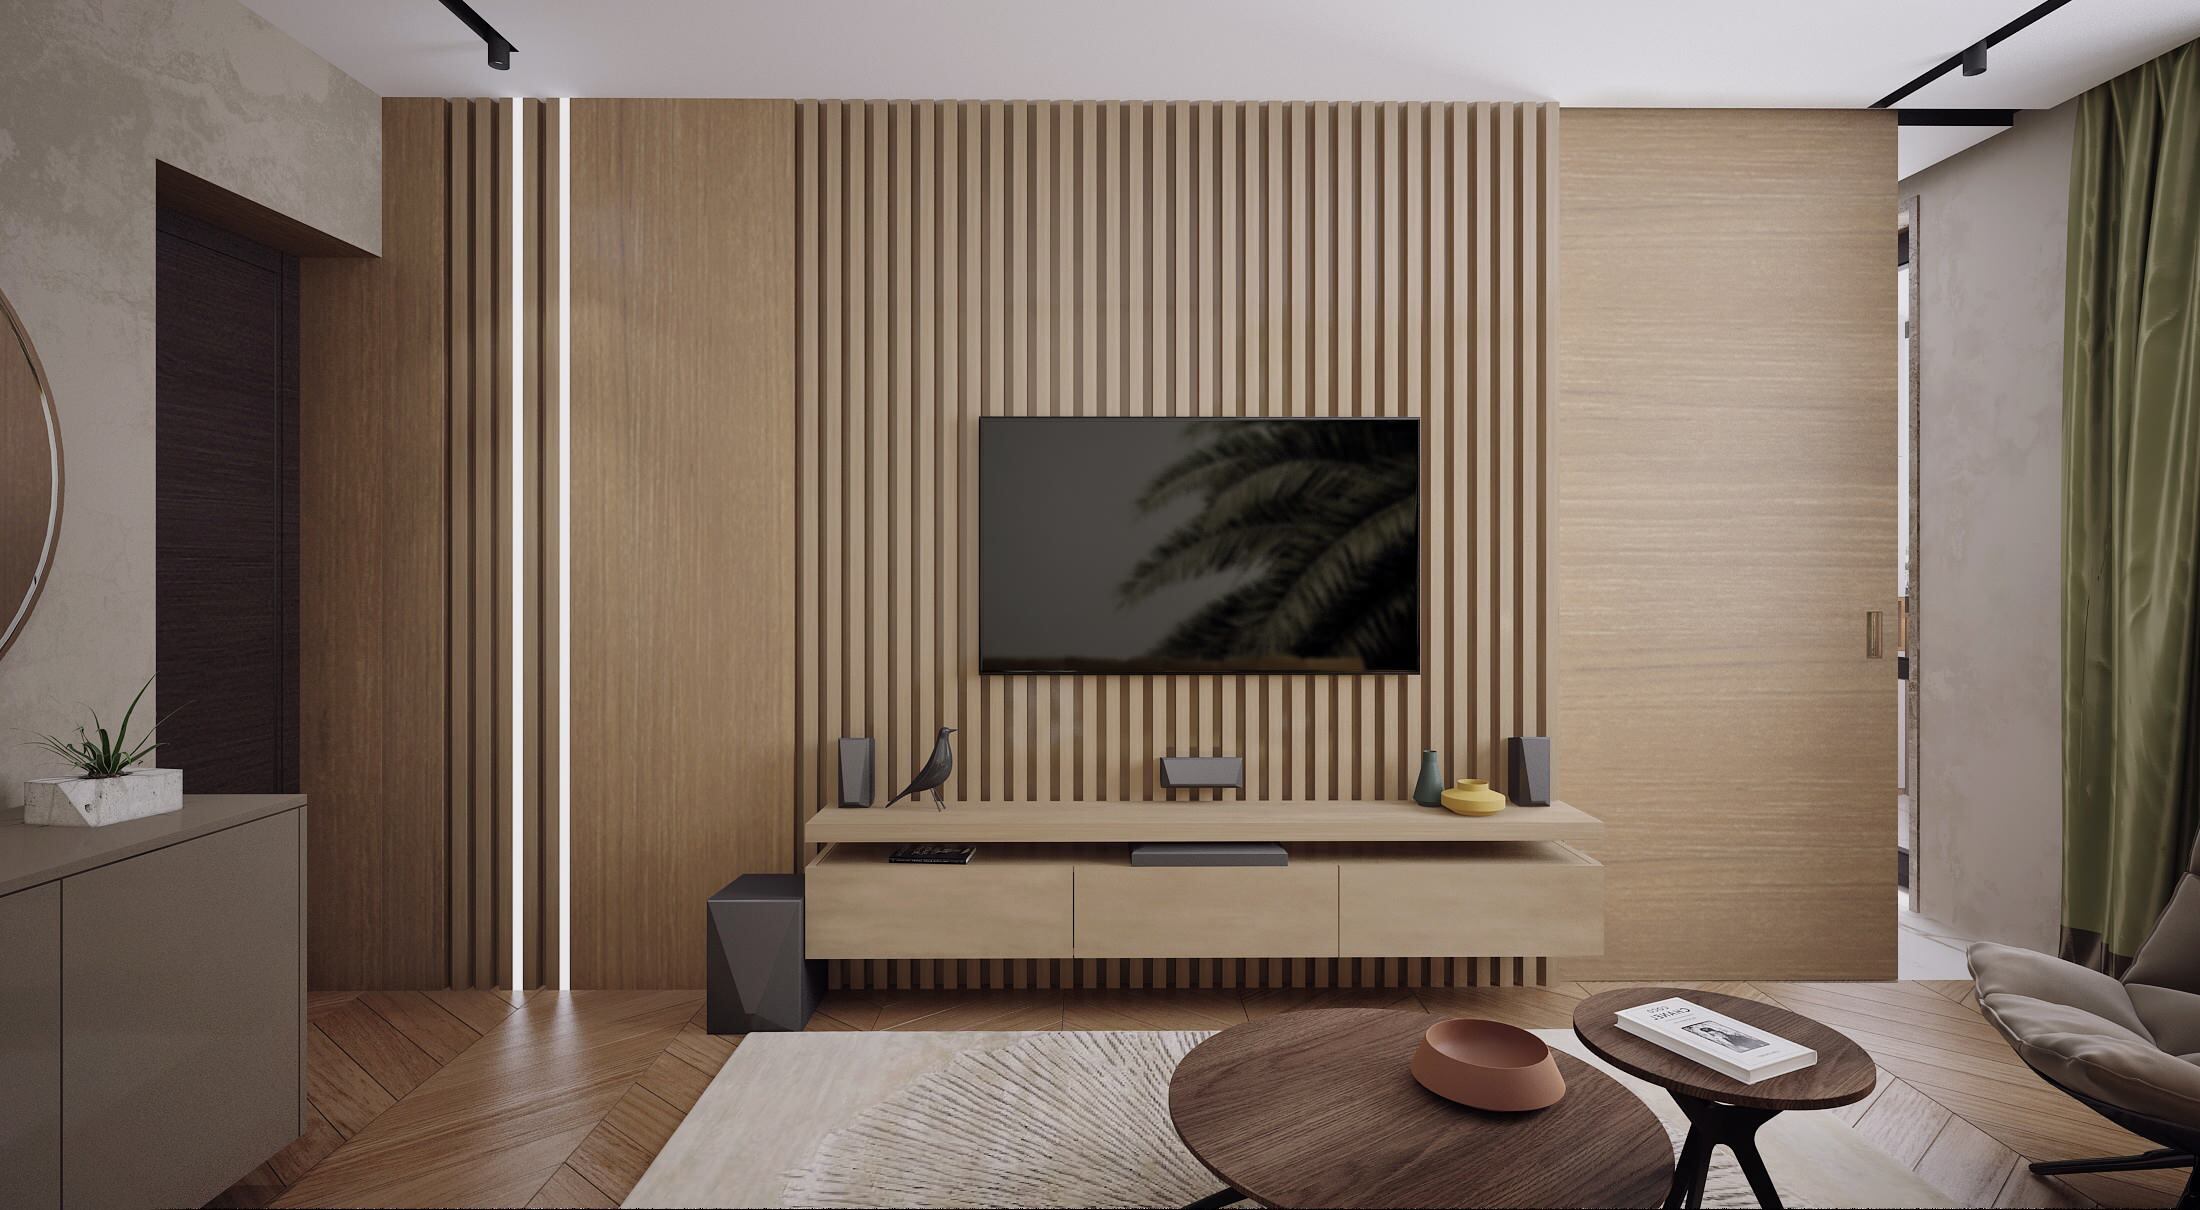 Интерьер гостиной cтеной с телевизором, телевизором на рейках, вертикальными жалюзи и рейками с подсветкой